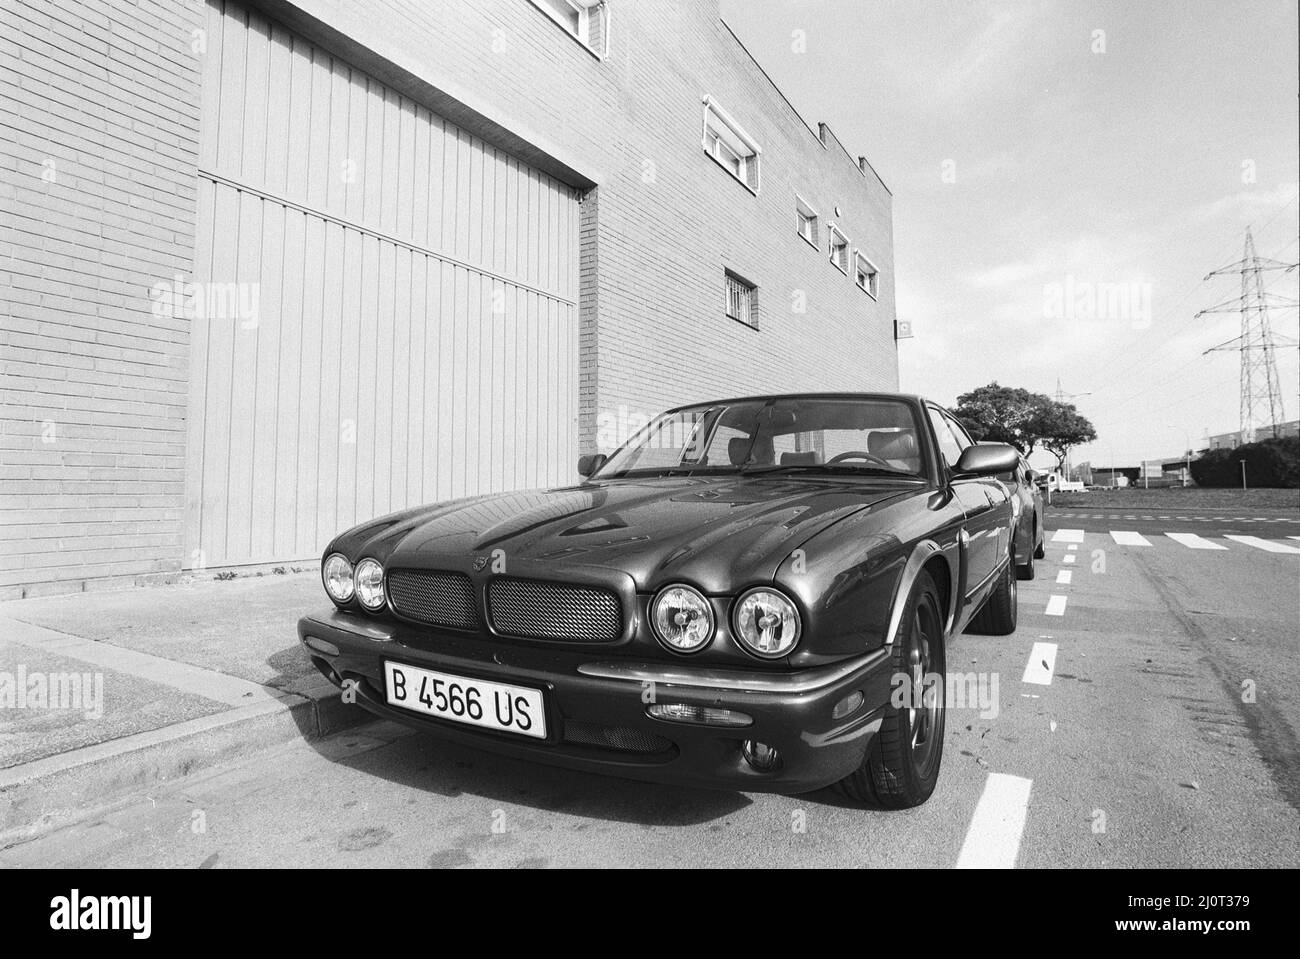 Immagine in scala di grigi di un'auto classica parcheggiata in strada, modello Jaguar XJ. Viladecans, Spagna Foto Stock